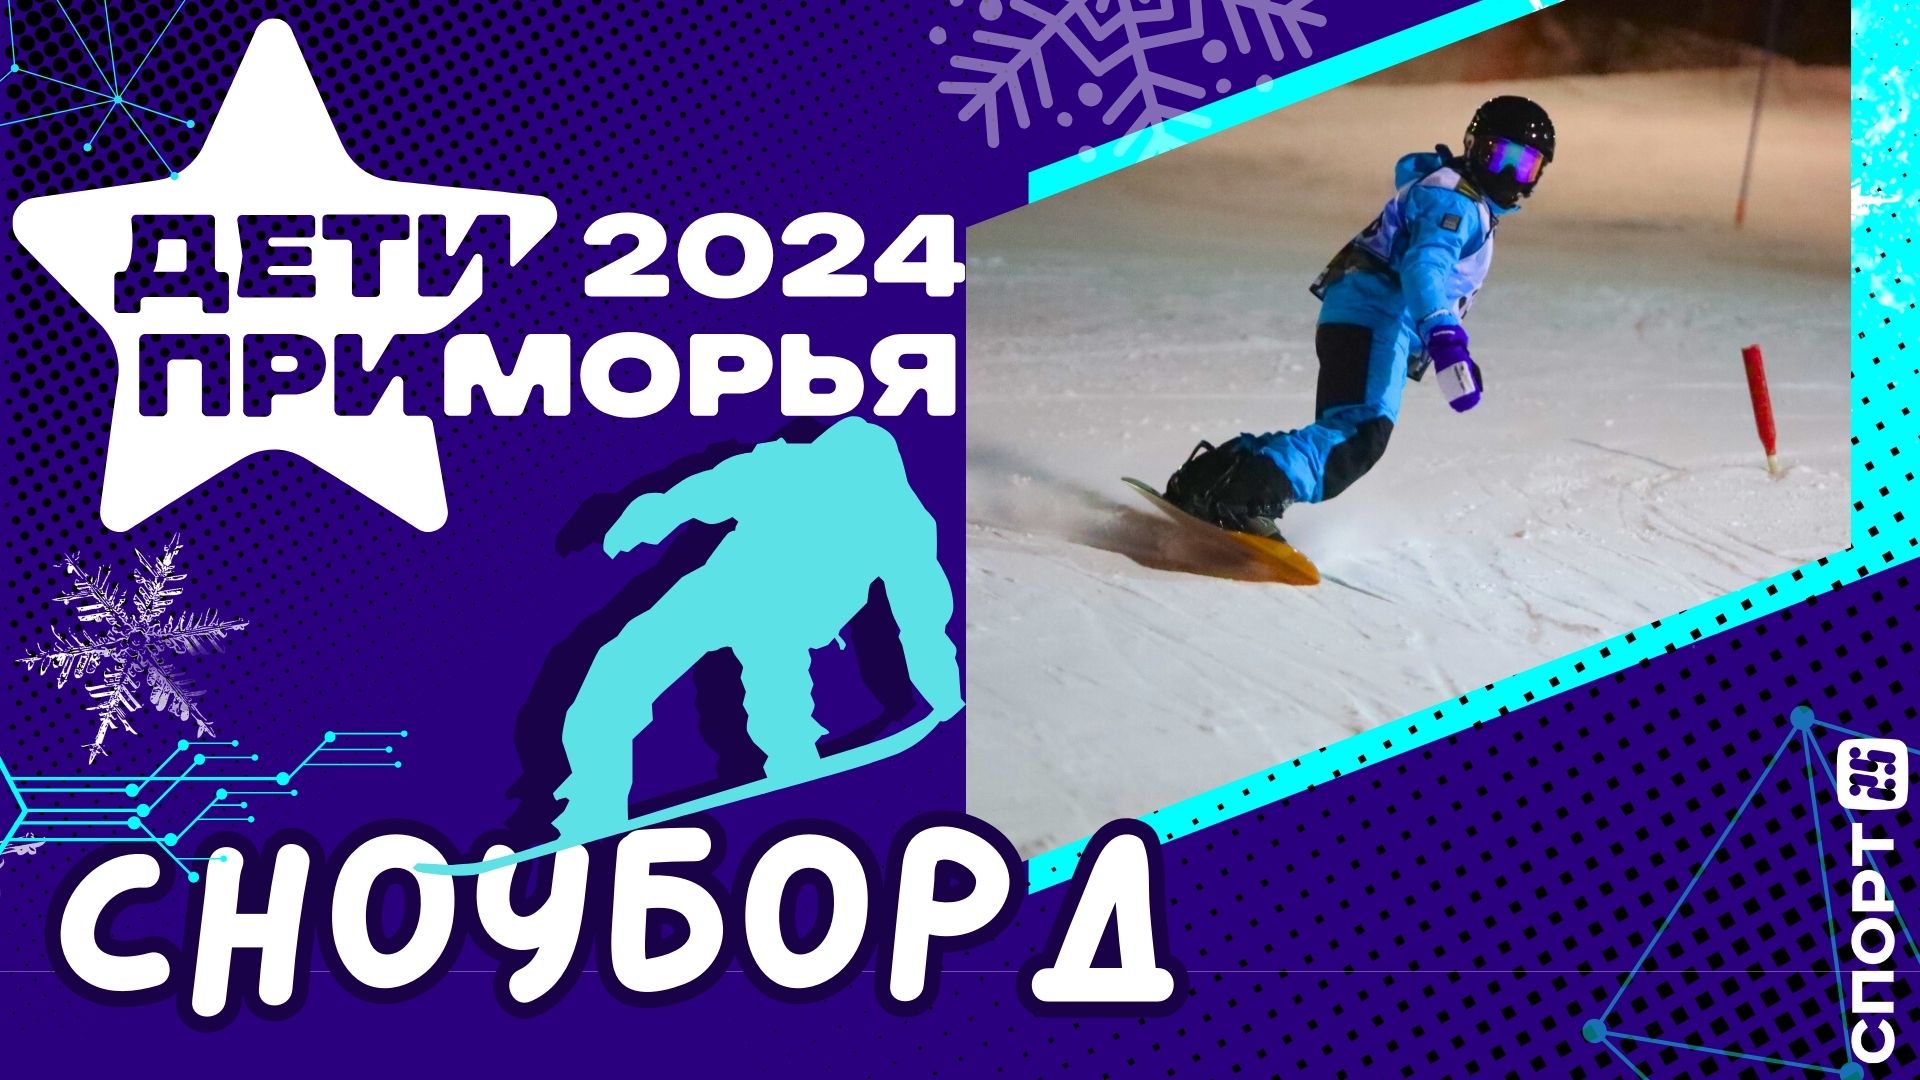 Дети Приморья сноуборд - I Зимние Игры в Приморье, февраль 2024 г. / тренировка Владивосток 07.02